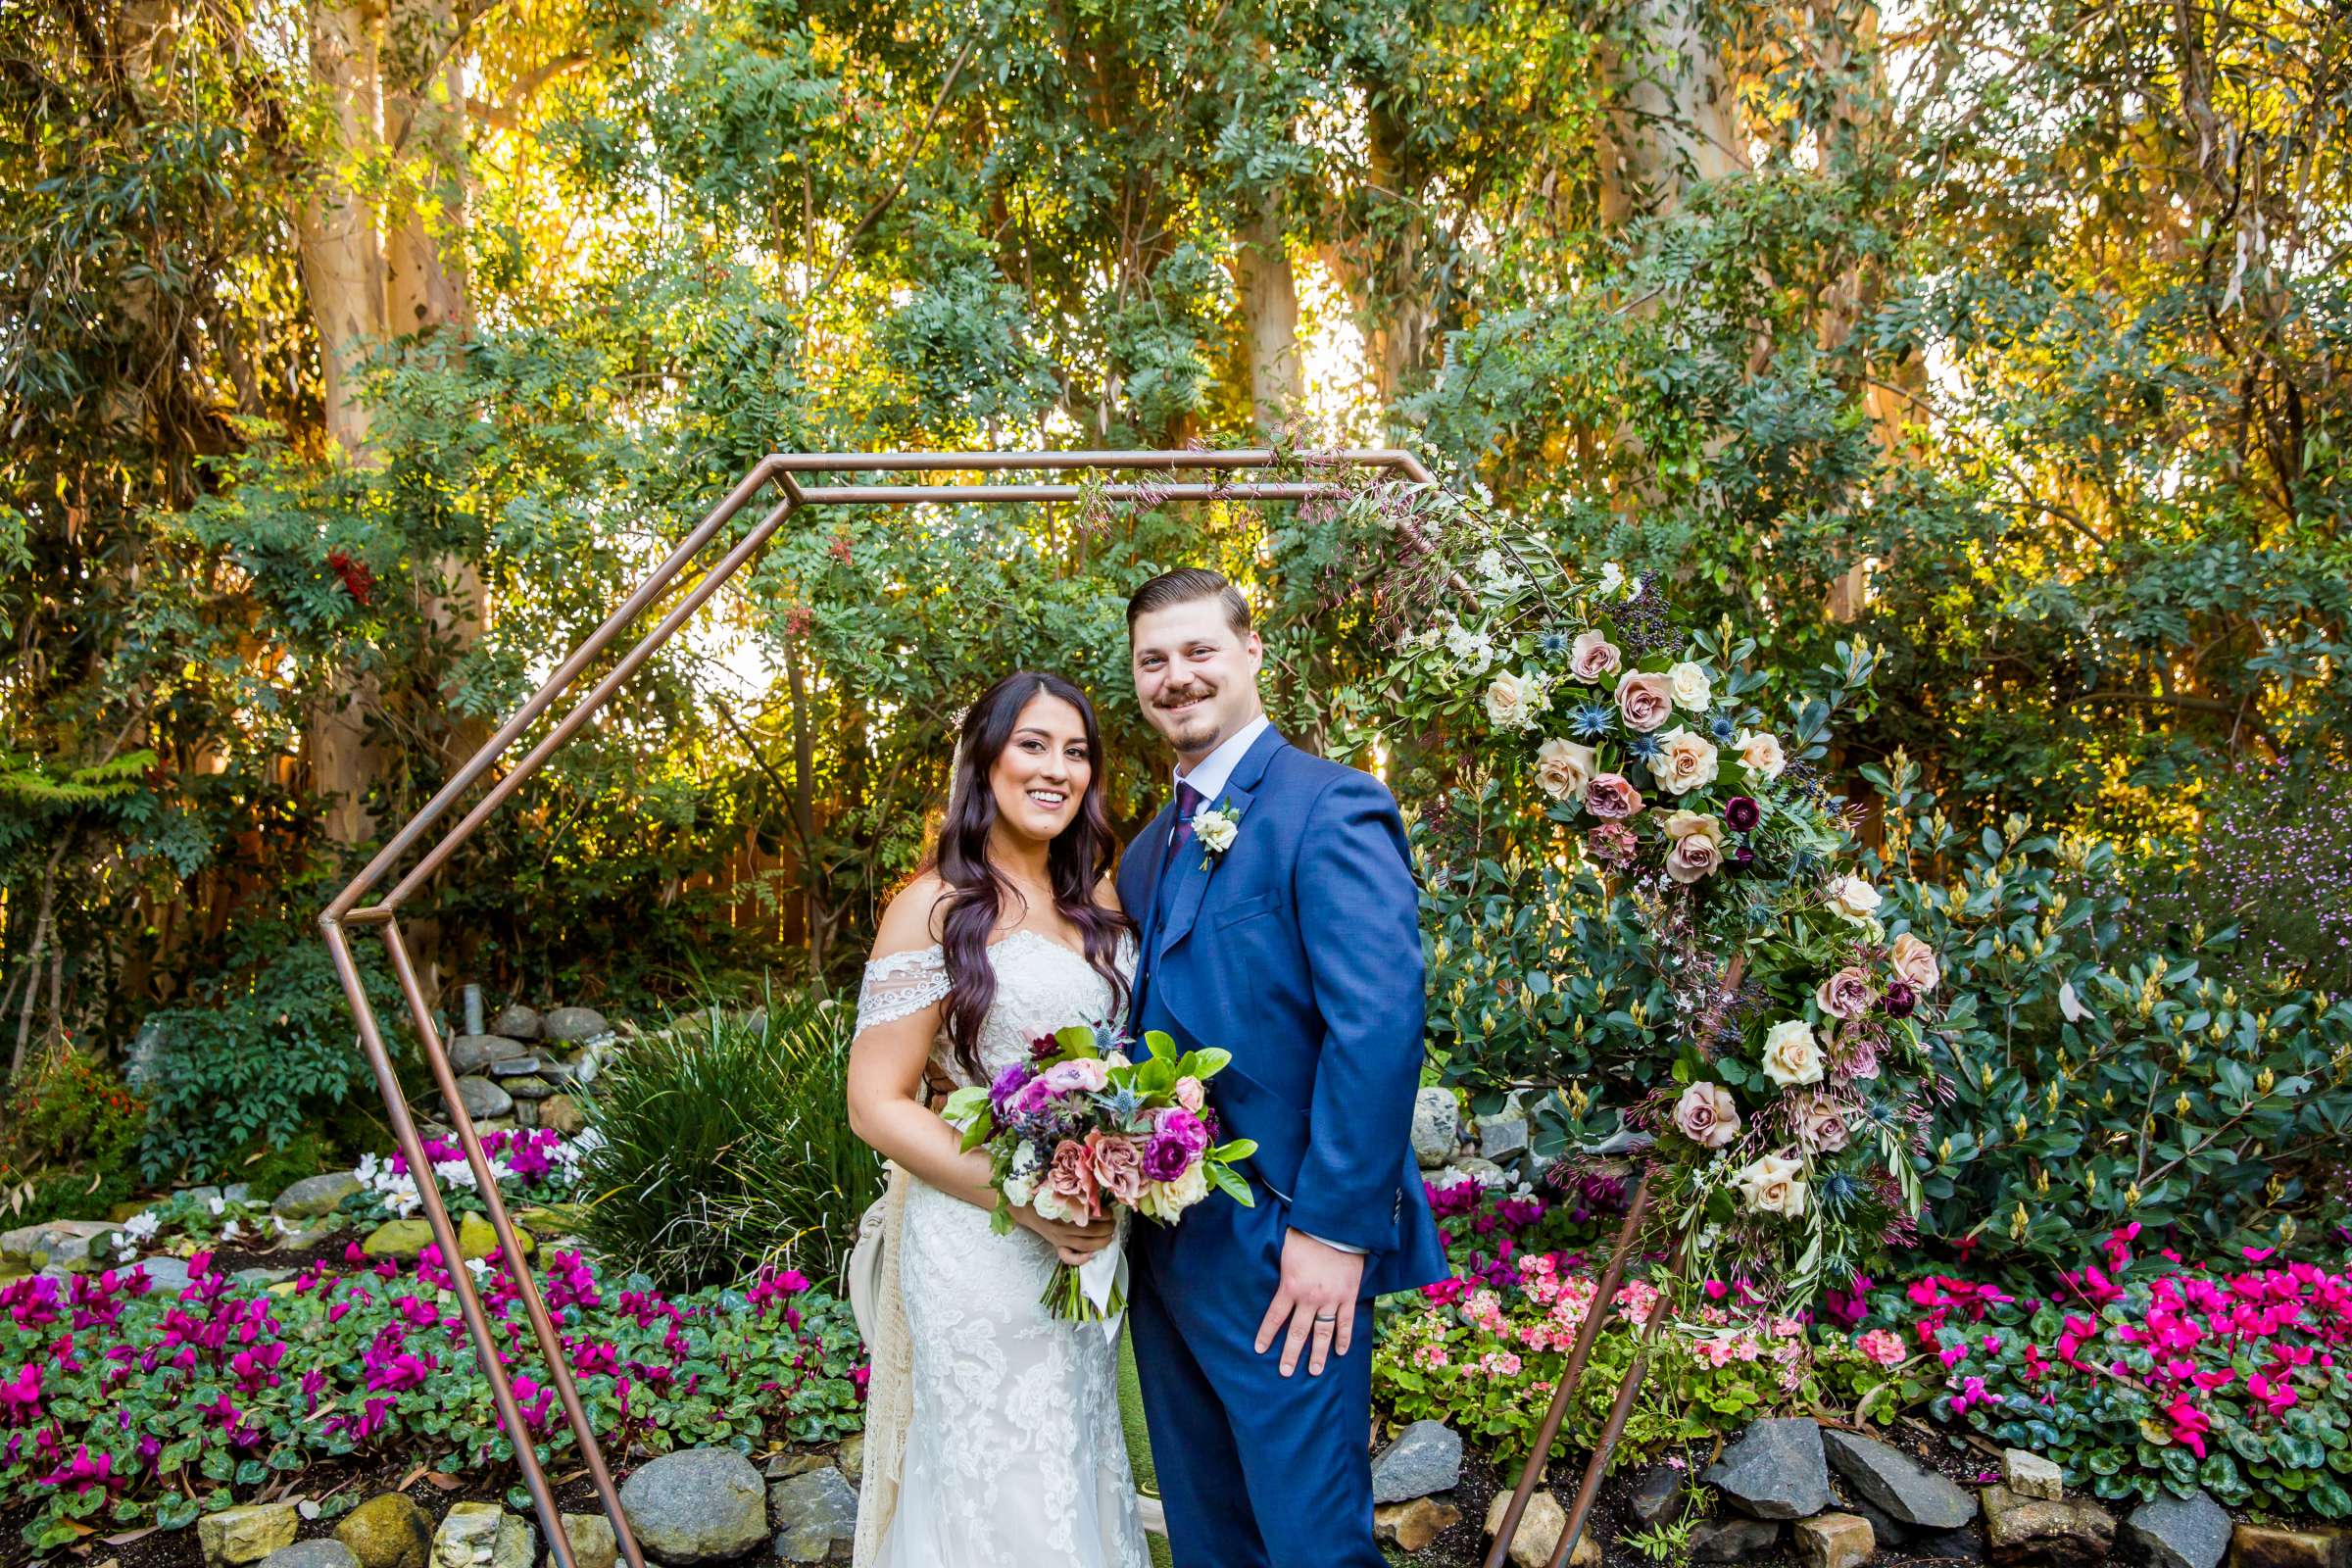 Twin Oaks House & Gardens Wedding Estate Wedding, Stephanie and Ilija Wedding Photo #1 by True Photography